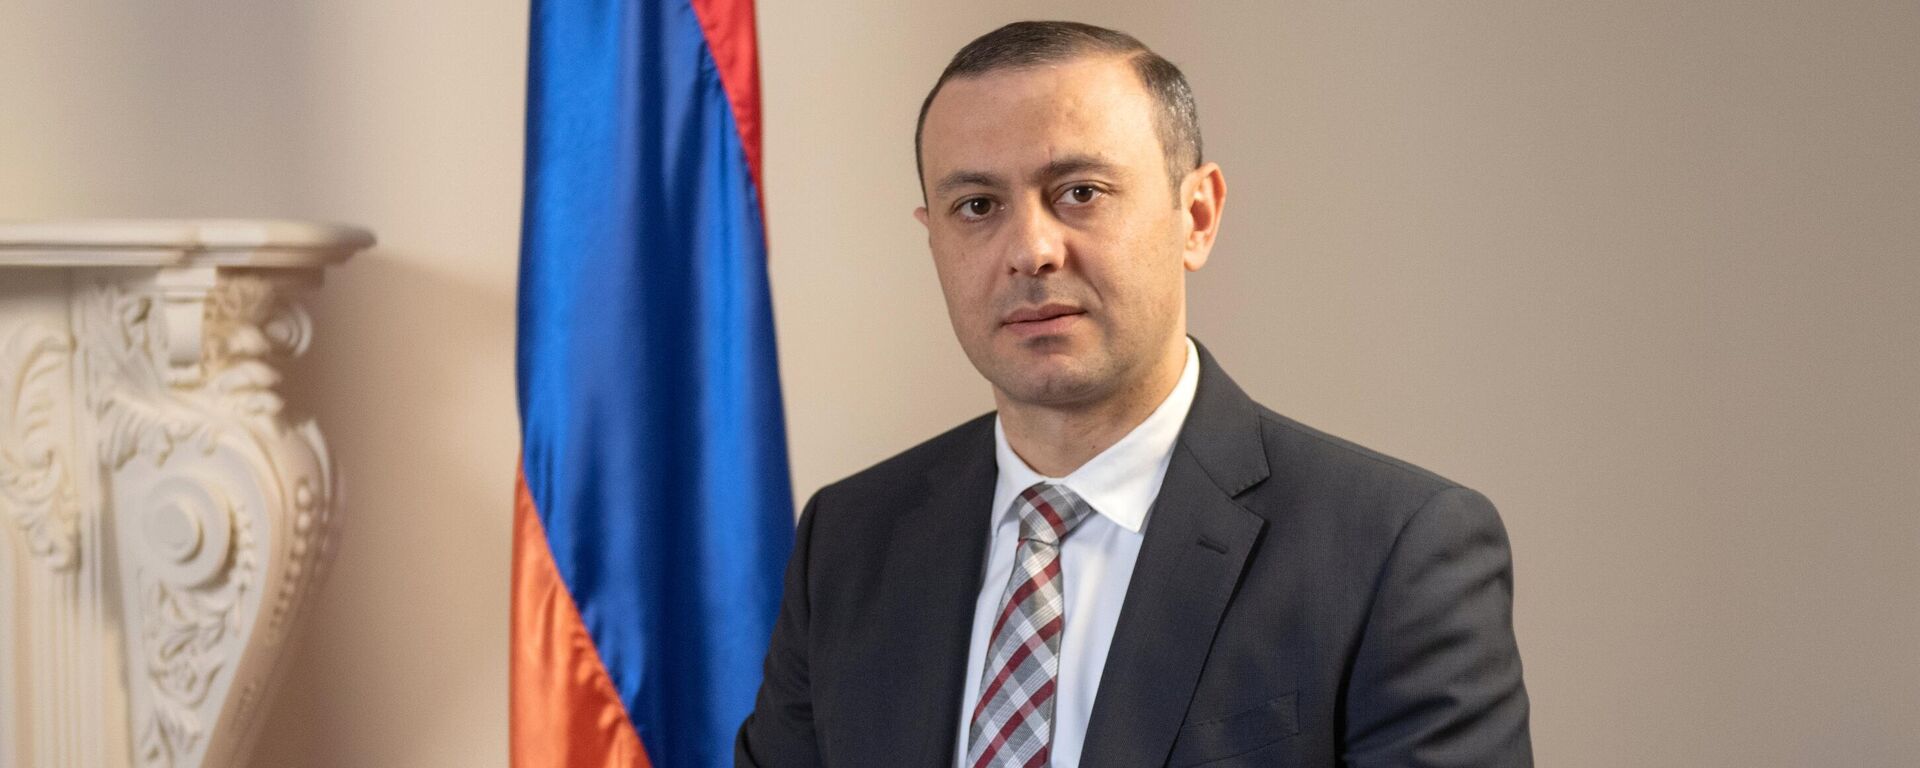 Secretario del Consejo de Seguridad armenio, Armén Grigorián - Sputnik Mundo, 1920, 16.11.2021